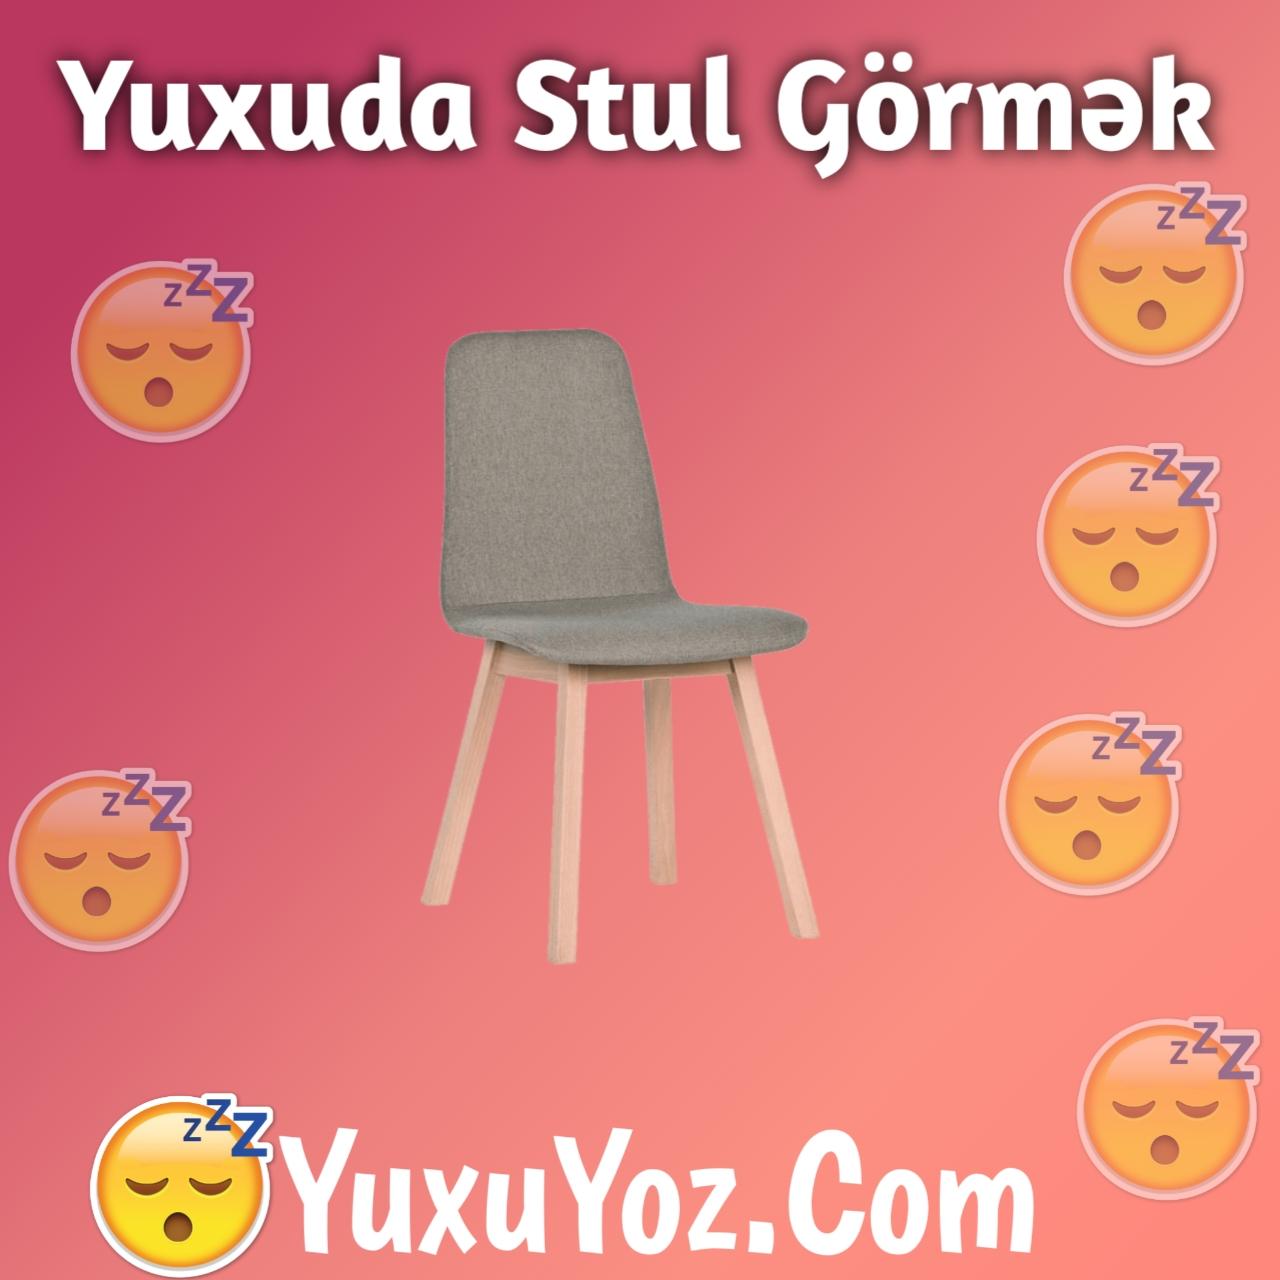 Yuxuda Stul Gormek